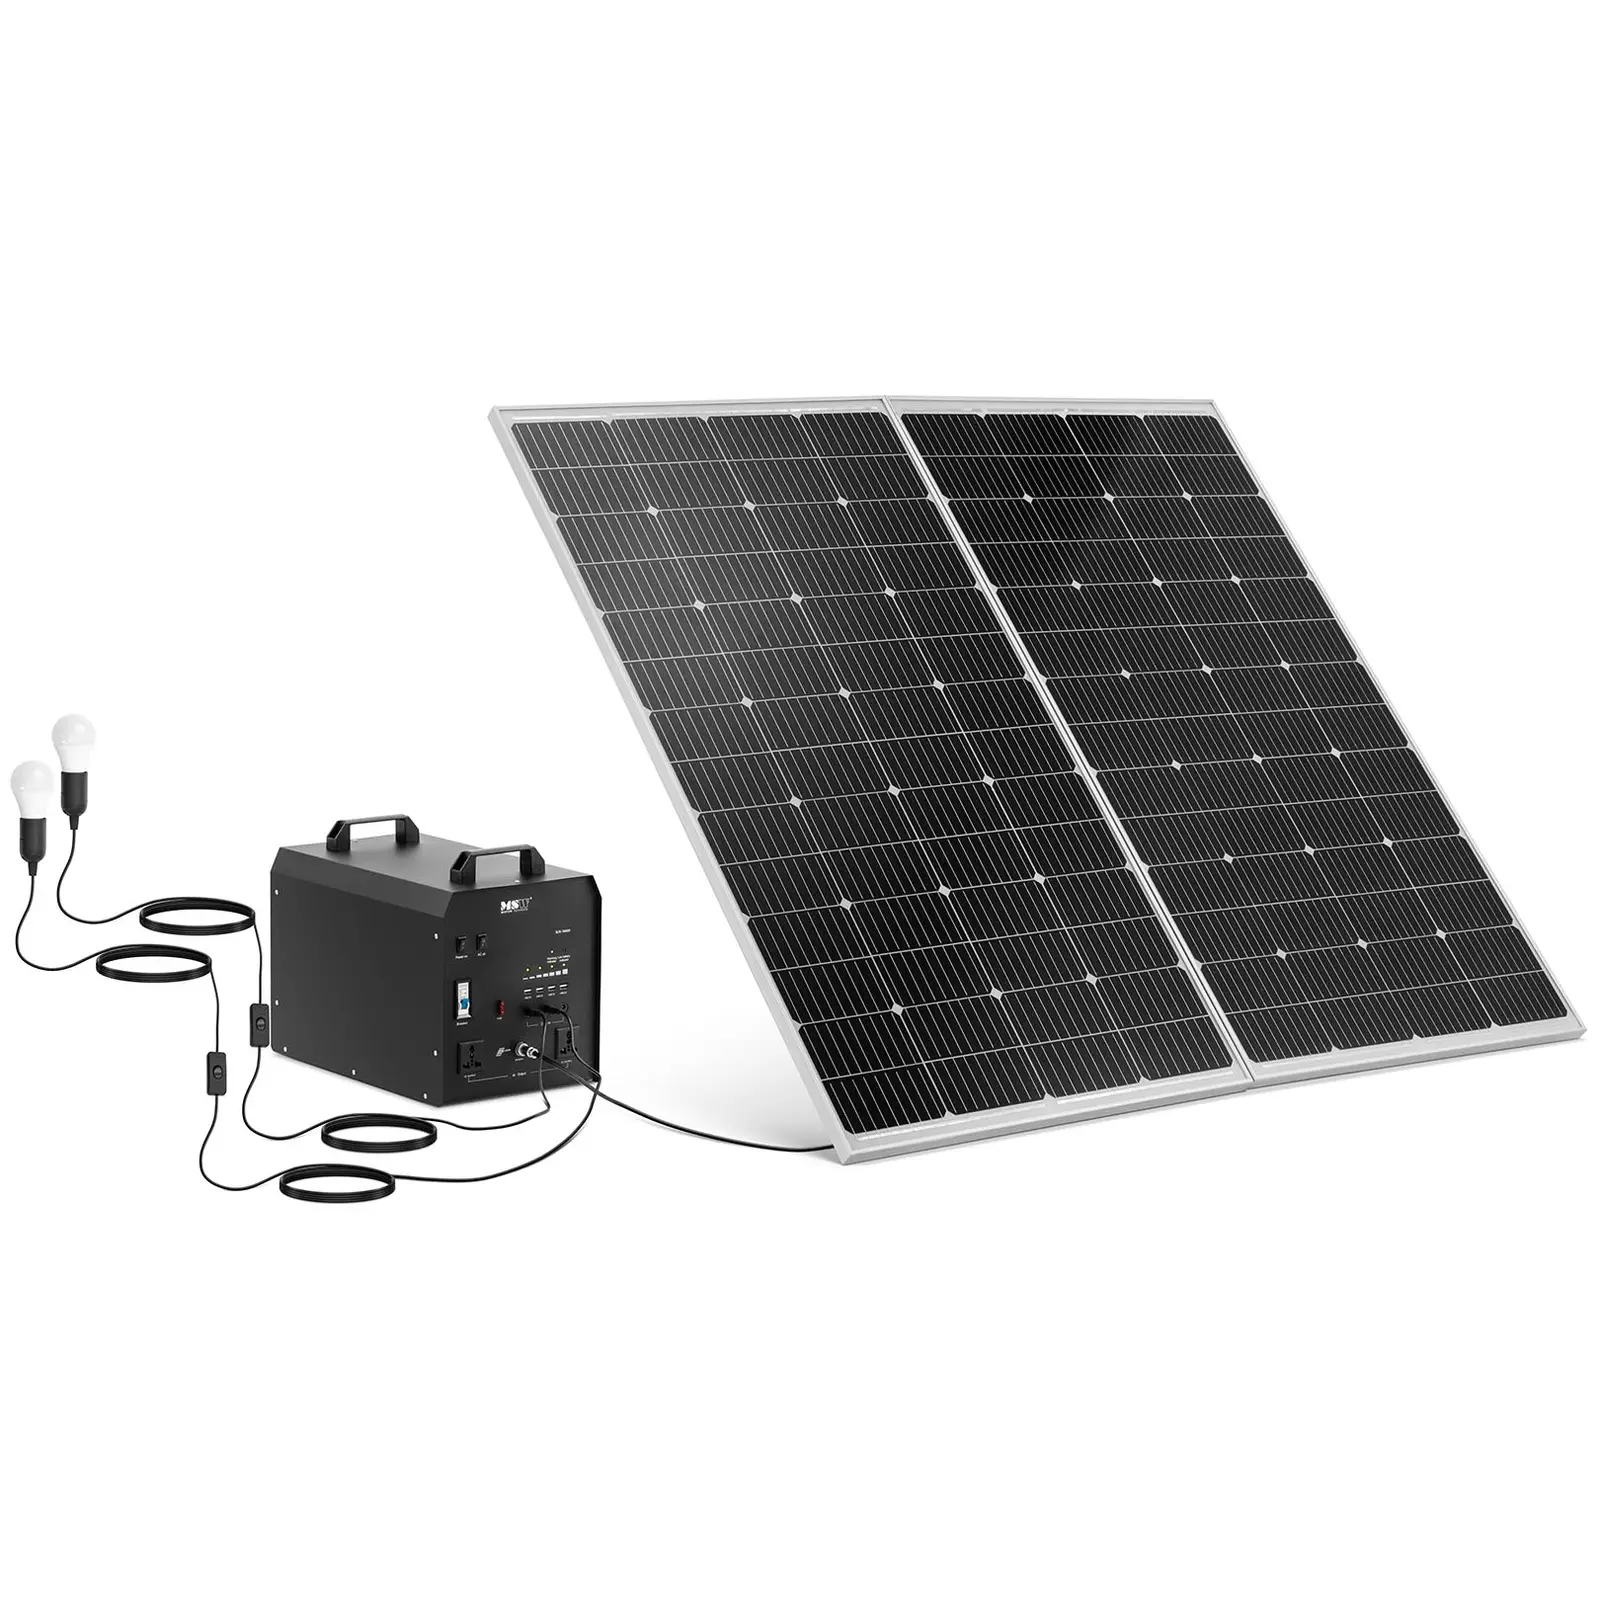 Powerstation mit Solarpanel und Wechselrichter - 1800 W - 5 / 12 /230 V - 2 LED-Leuchten